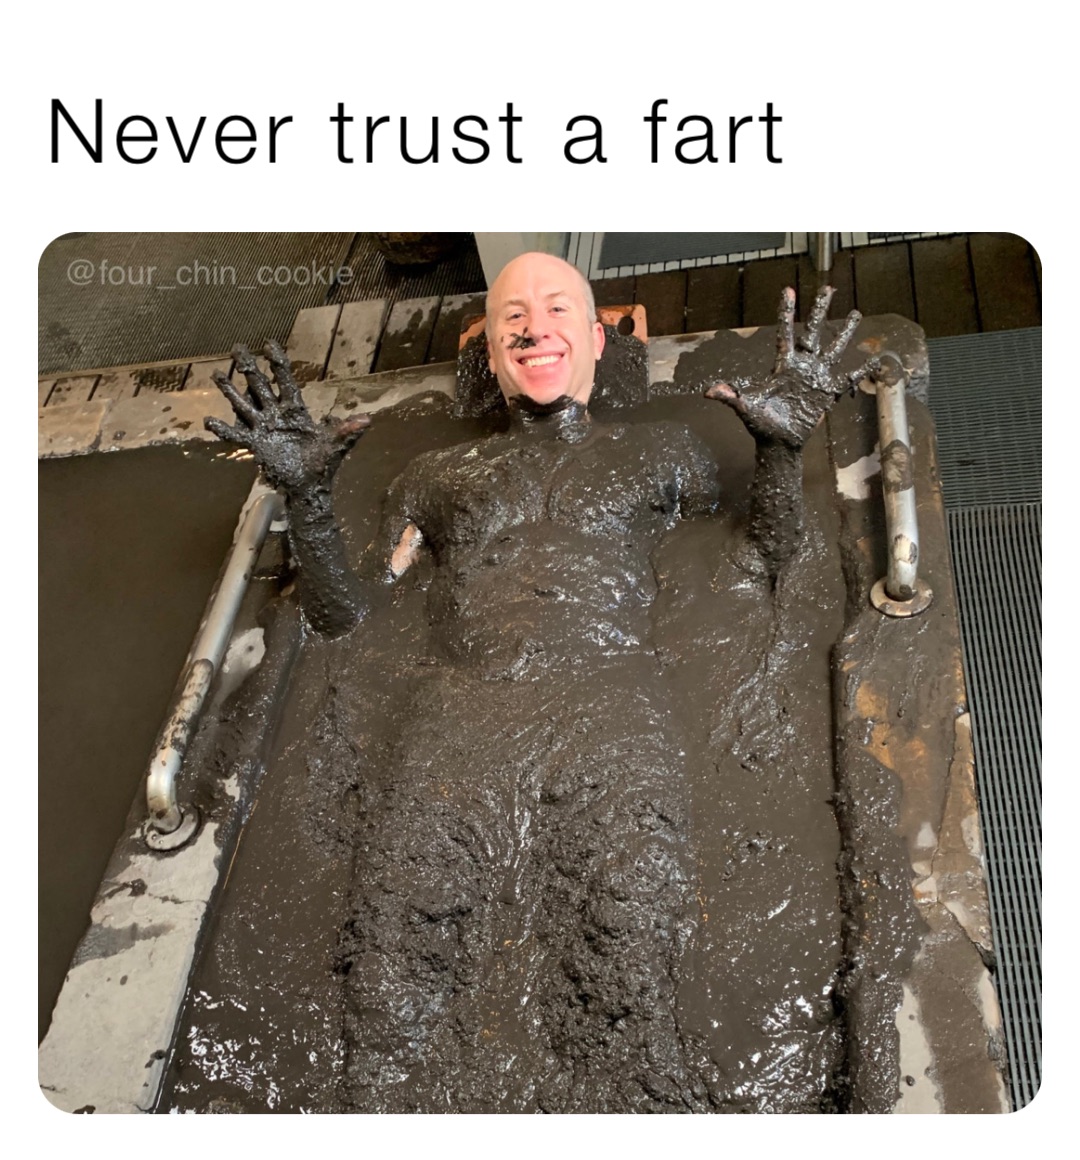 Never trust a fart